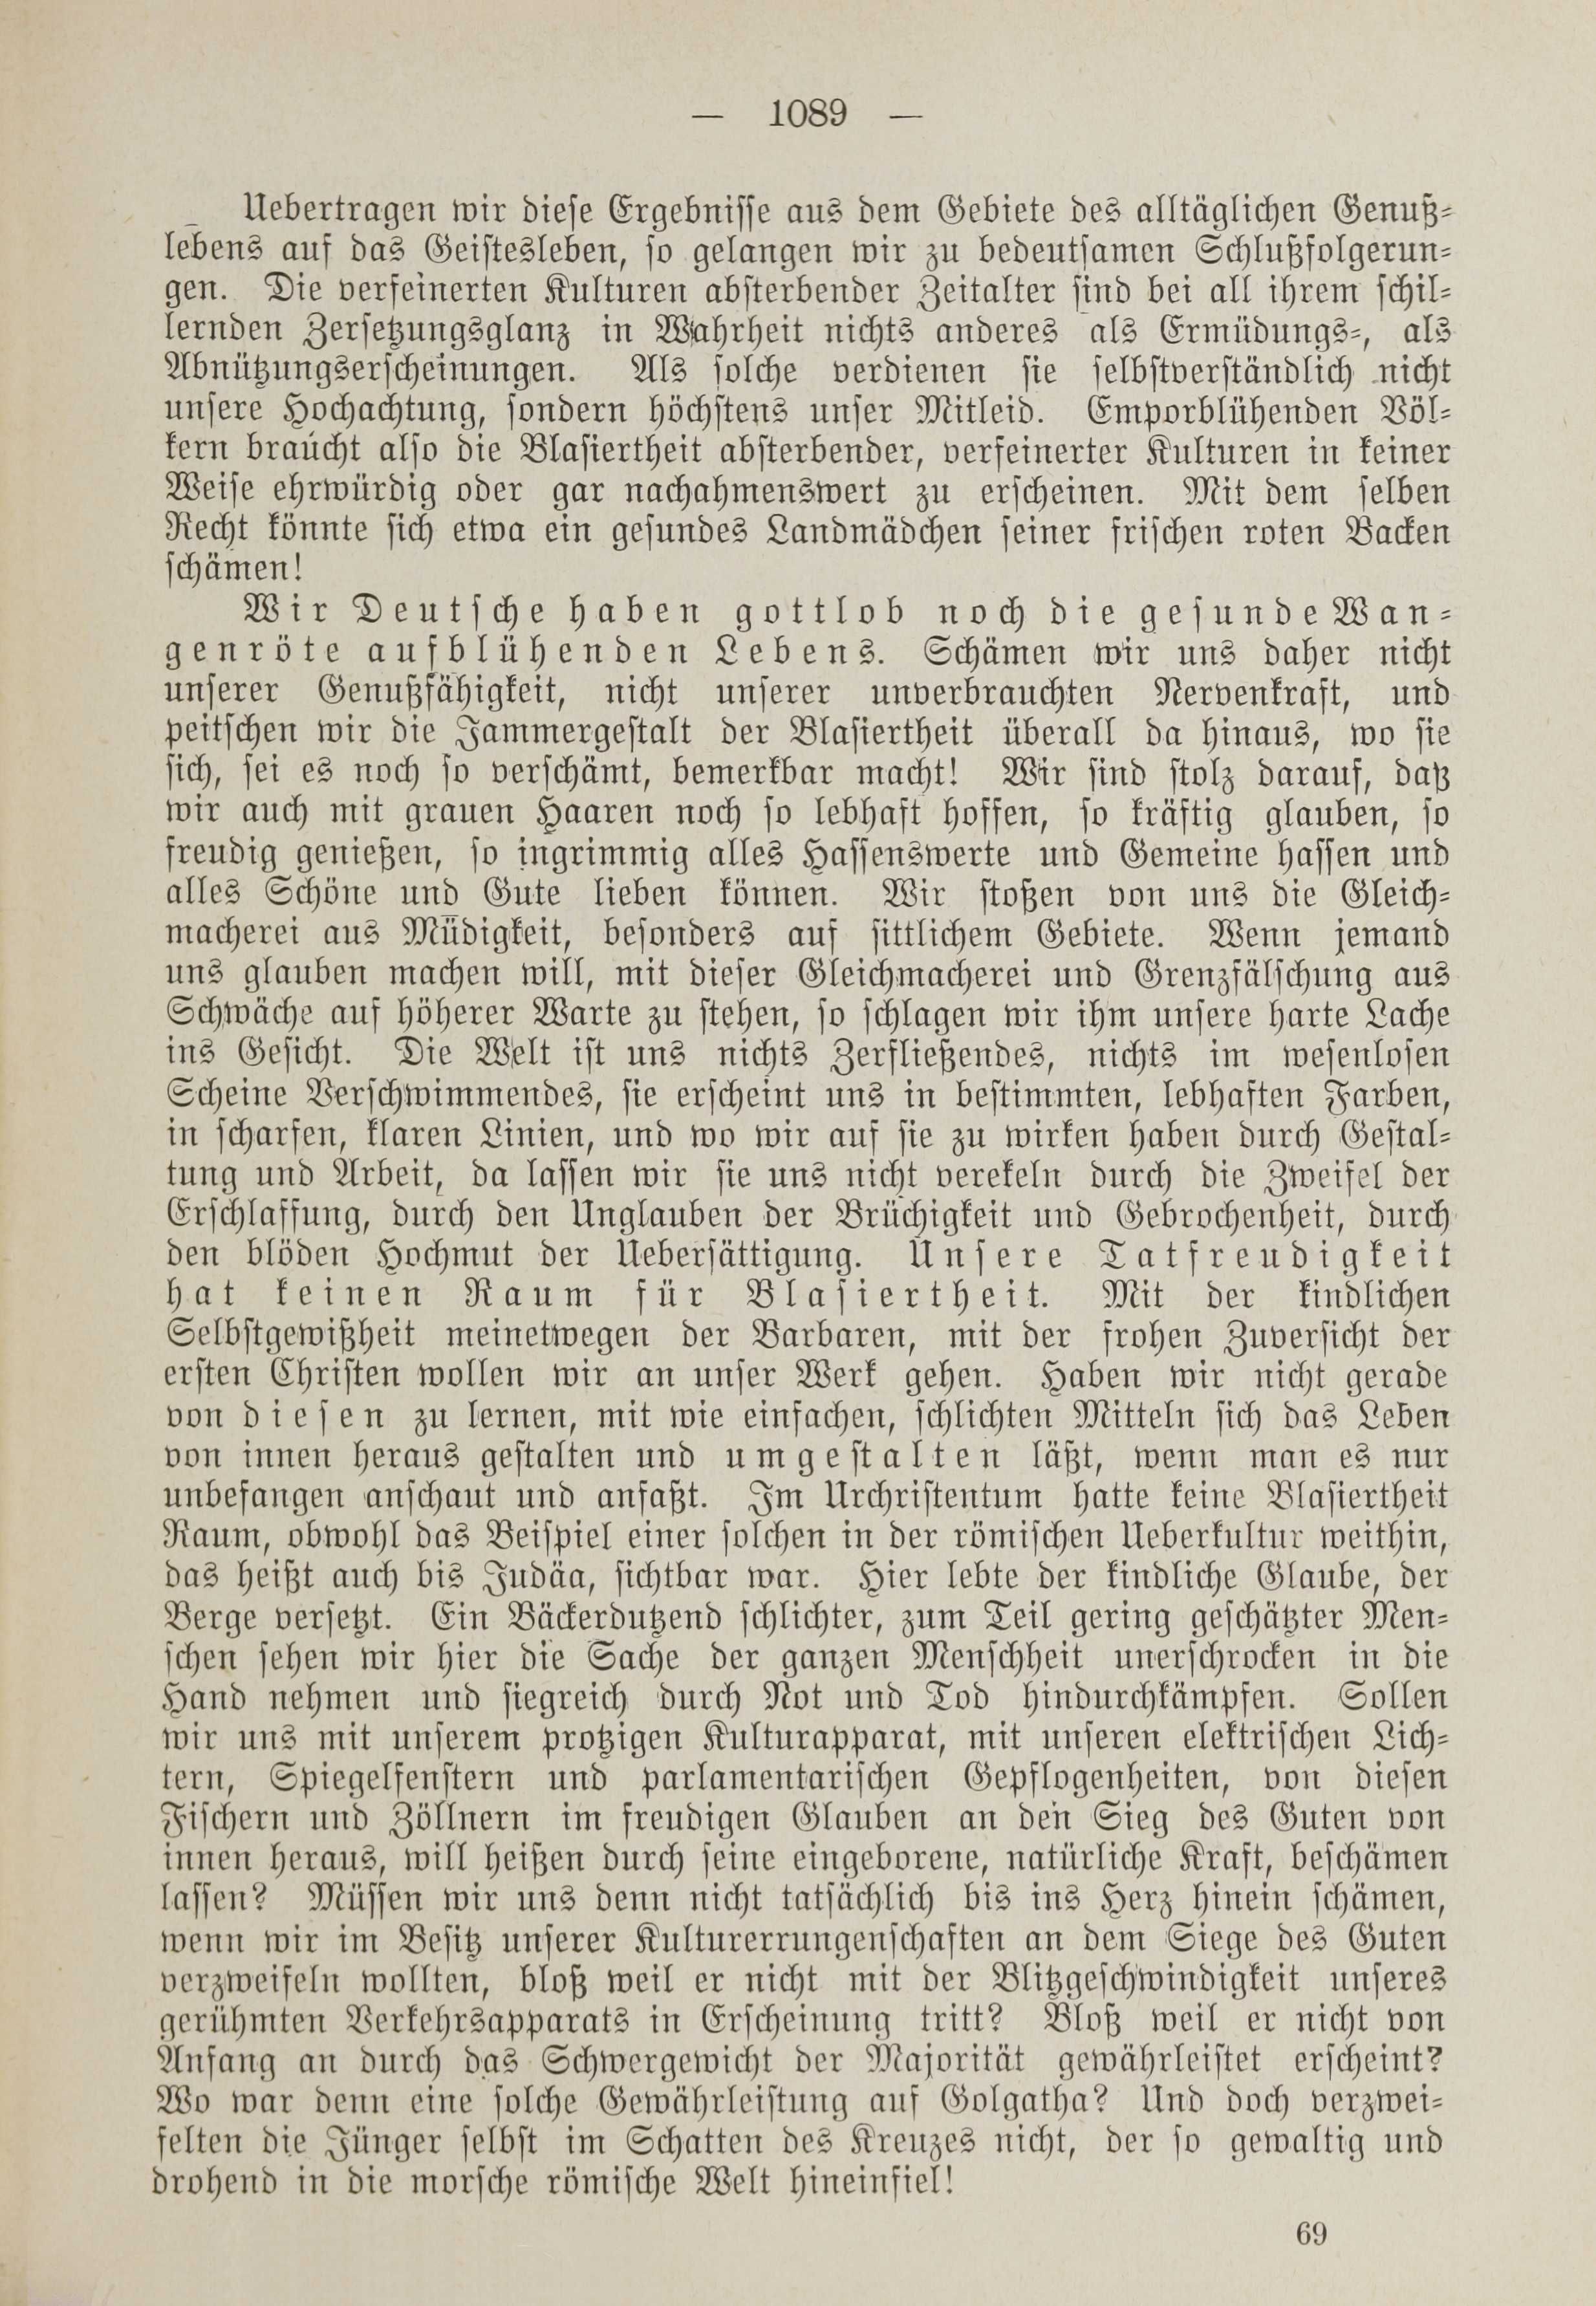 Deutsche Monatsschrift für Russland [1] (1912) | 1097. (1089) Main body of text